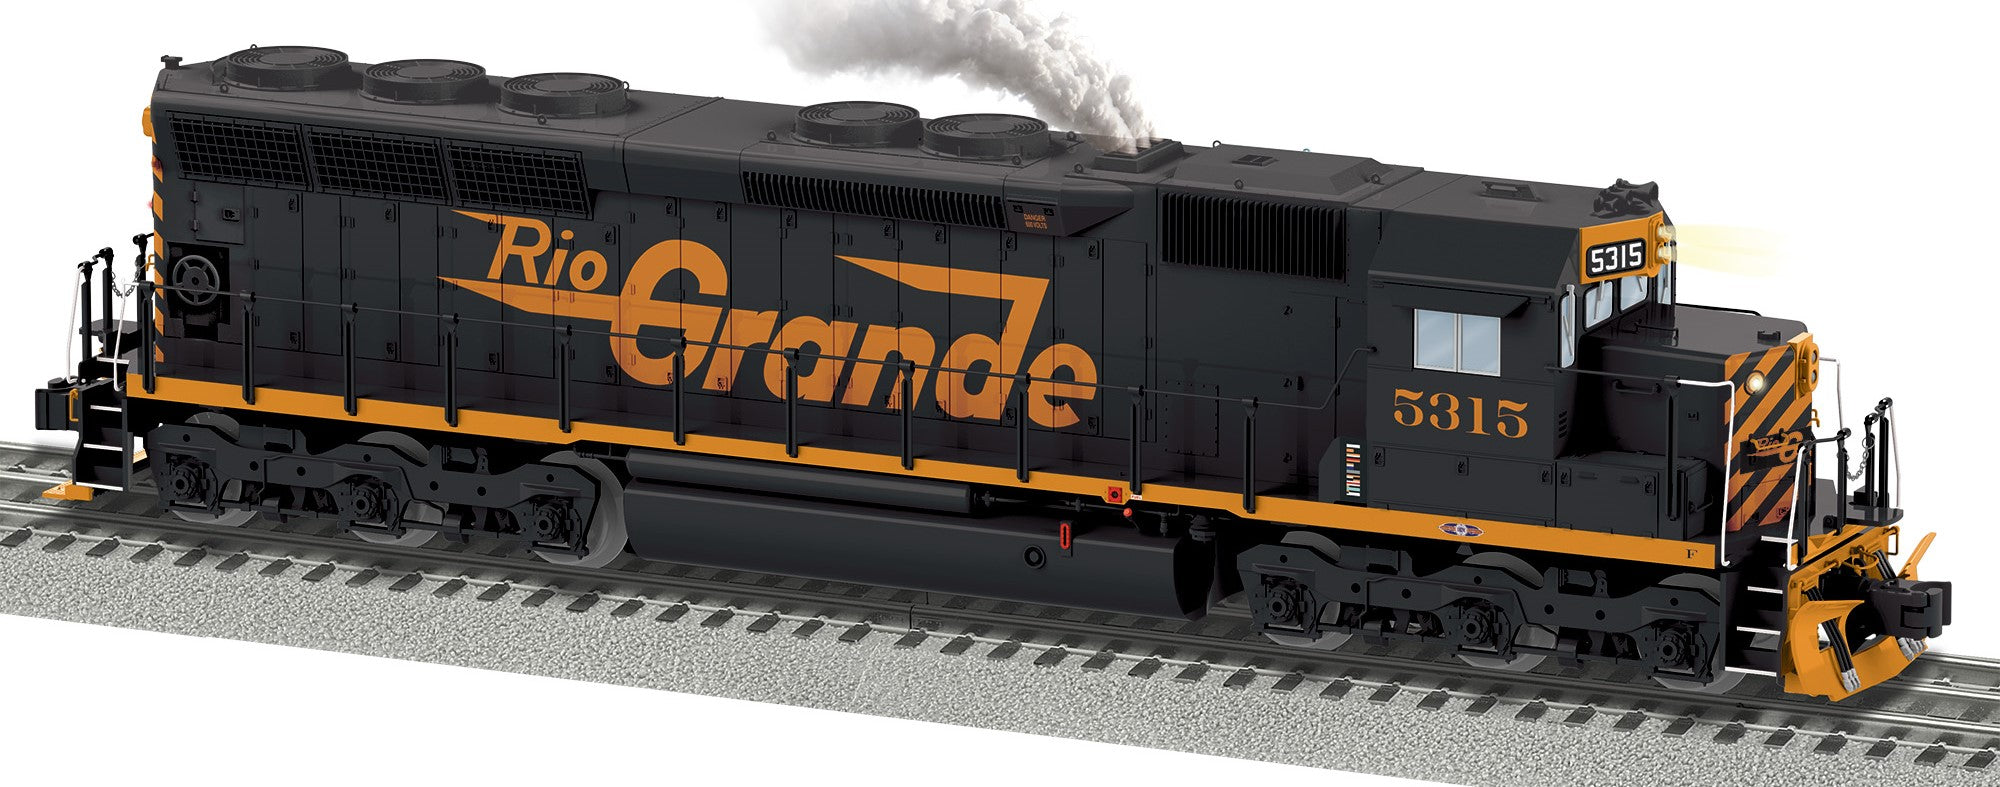 Lionel 2433541 - Legacy SD45 Diesel Locomotive "Denver & Rio Grande" #5315